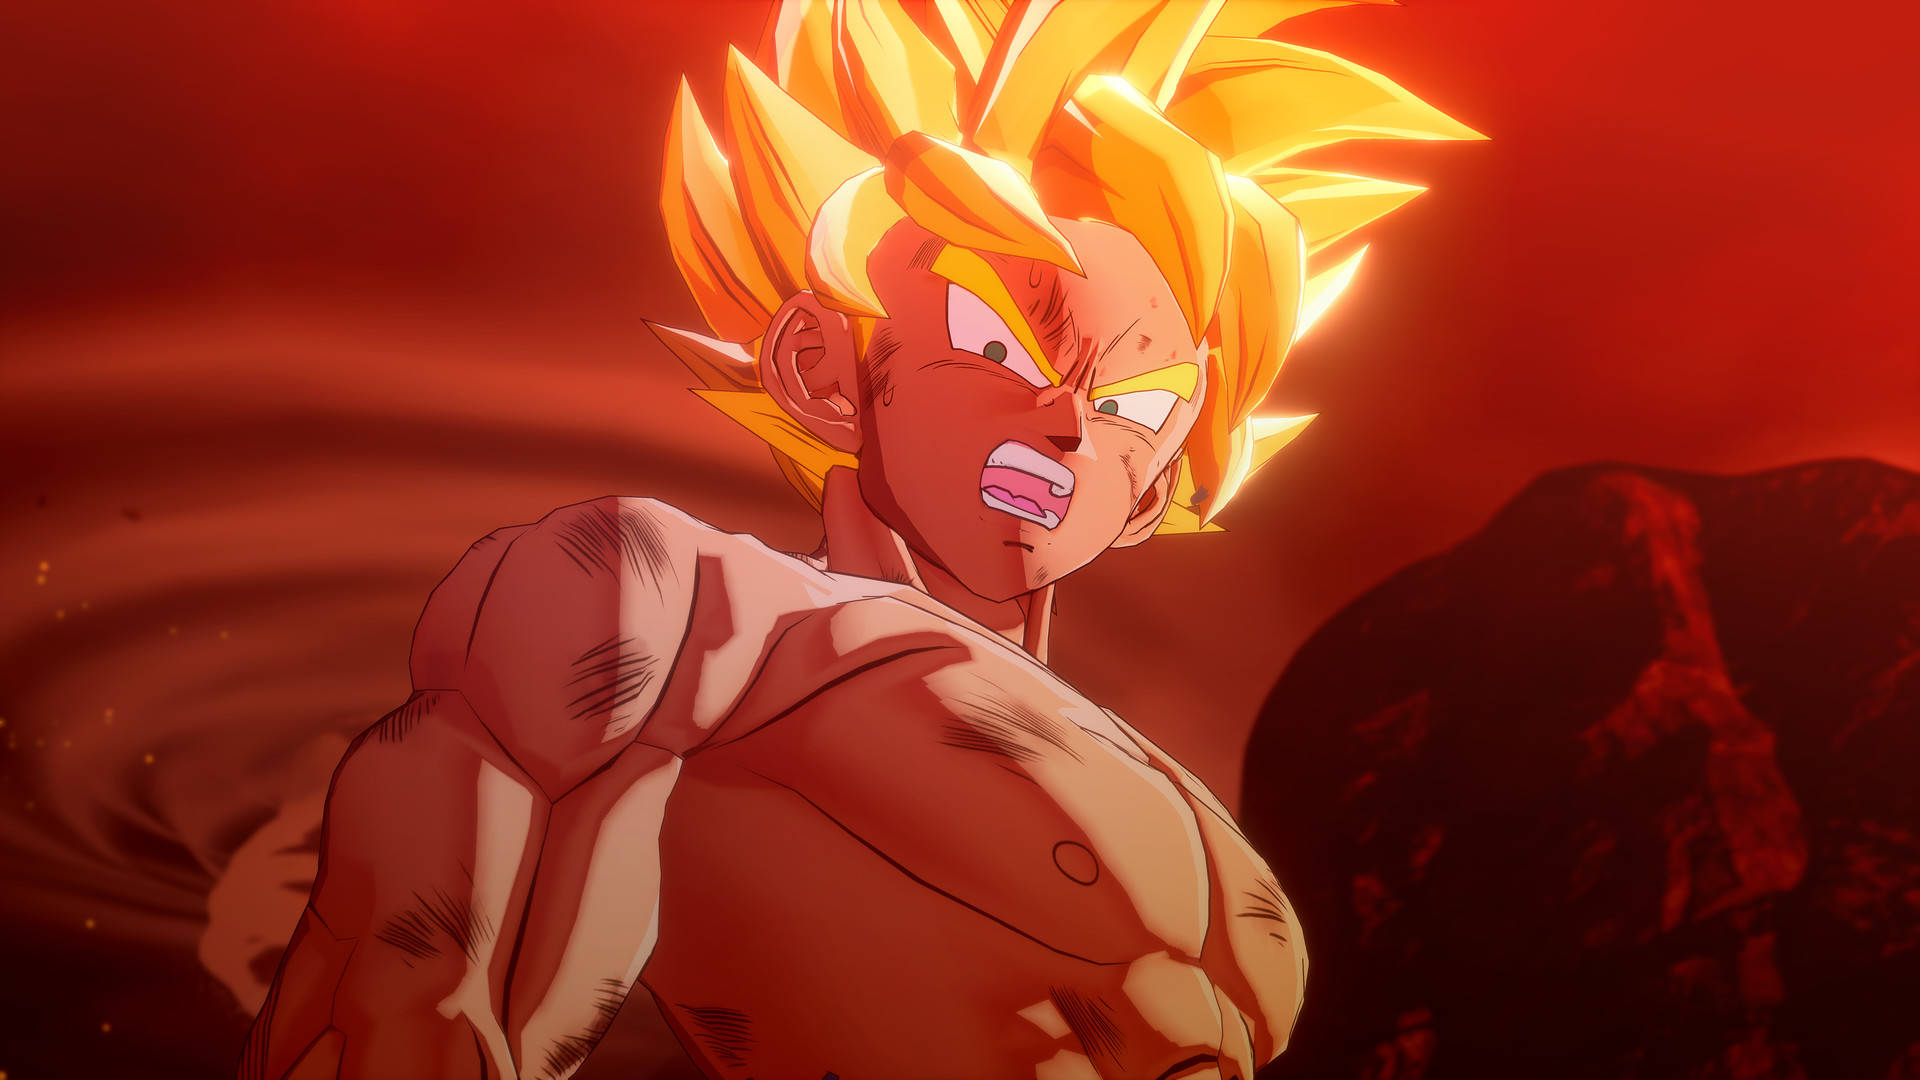 Cool Dragon Ball Z Angry Goku Background